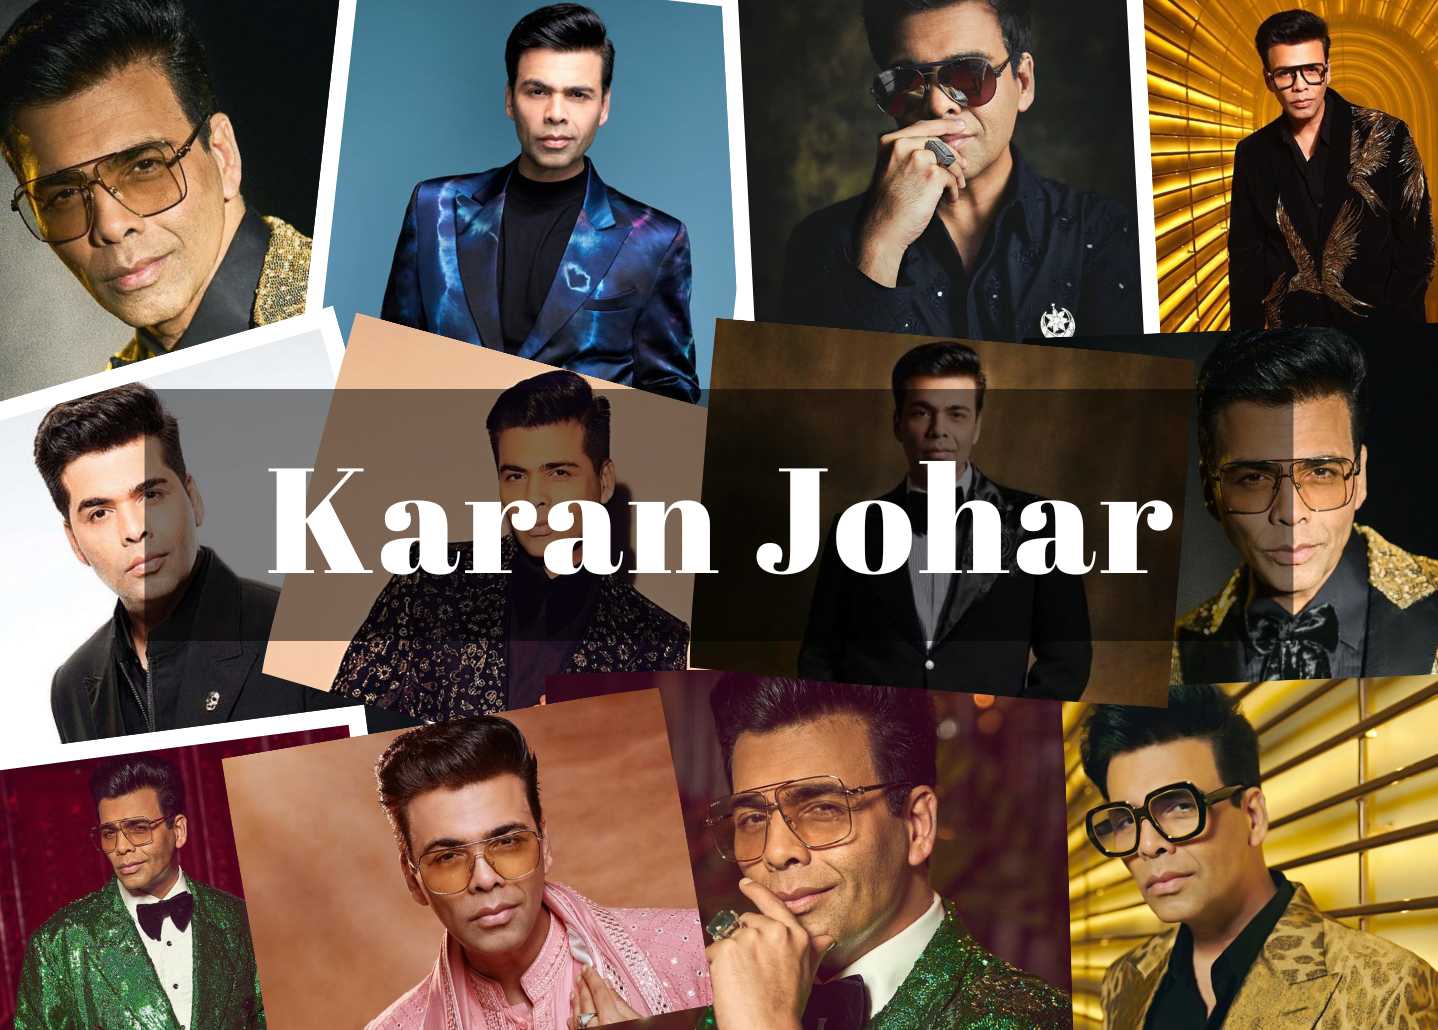 Karan Johar Biography, Movies, Age, Career